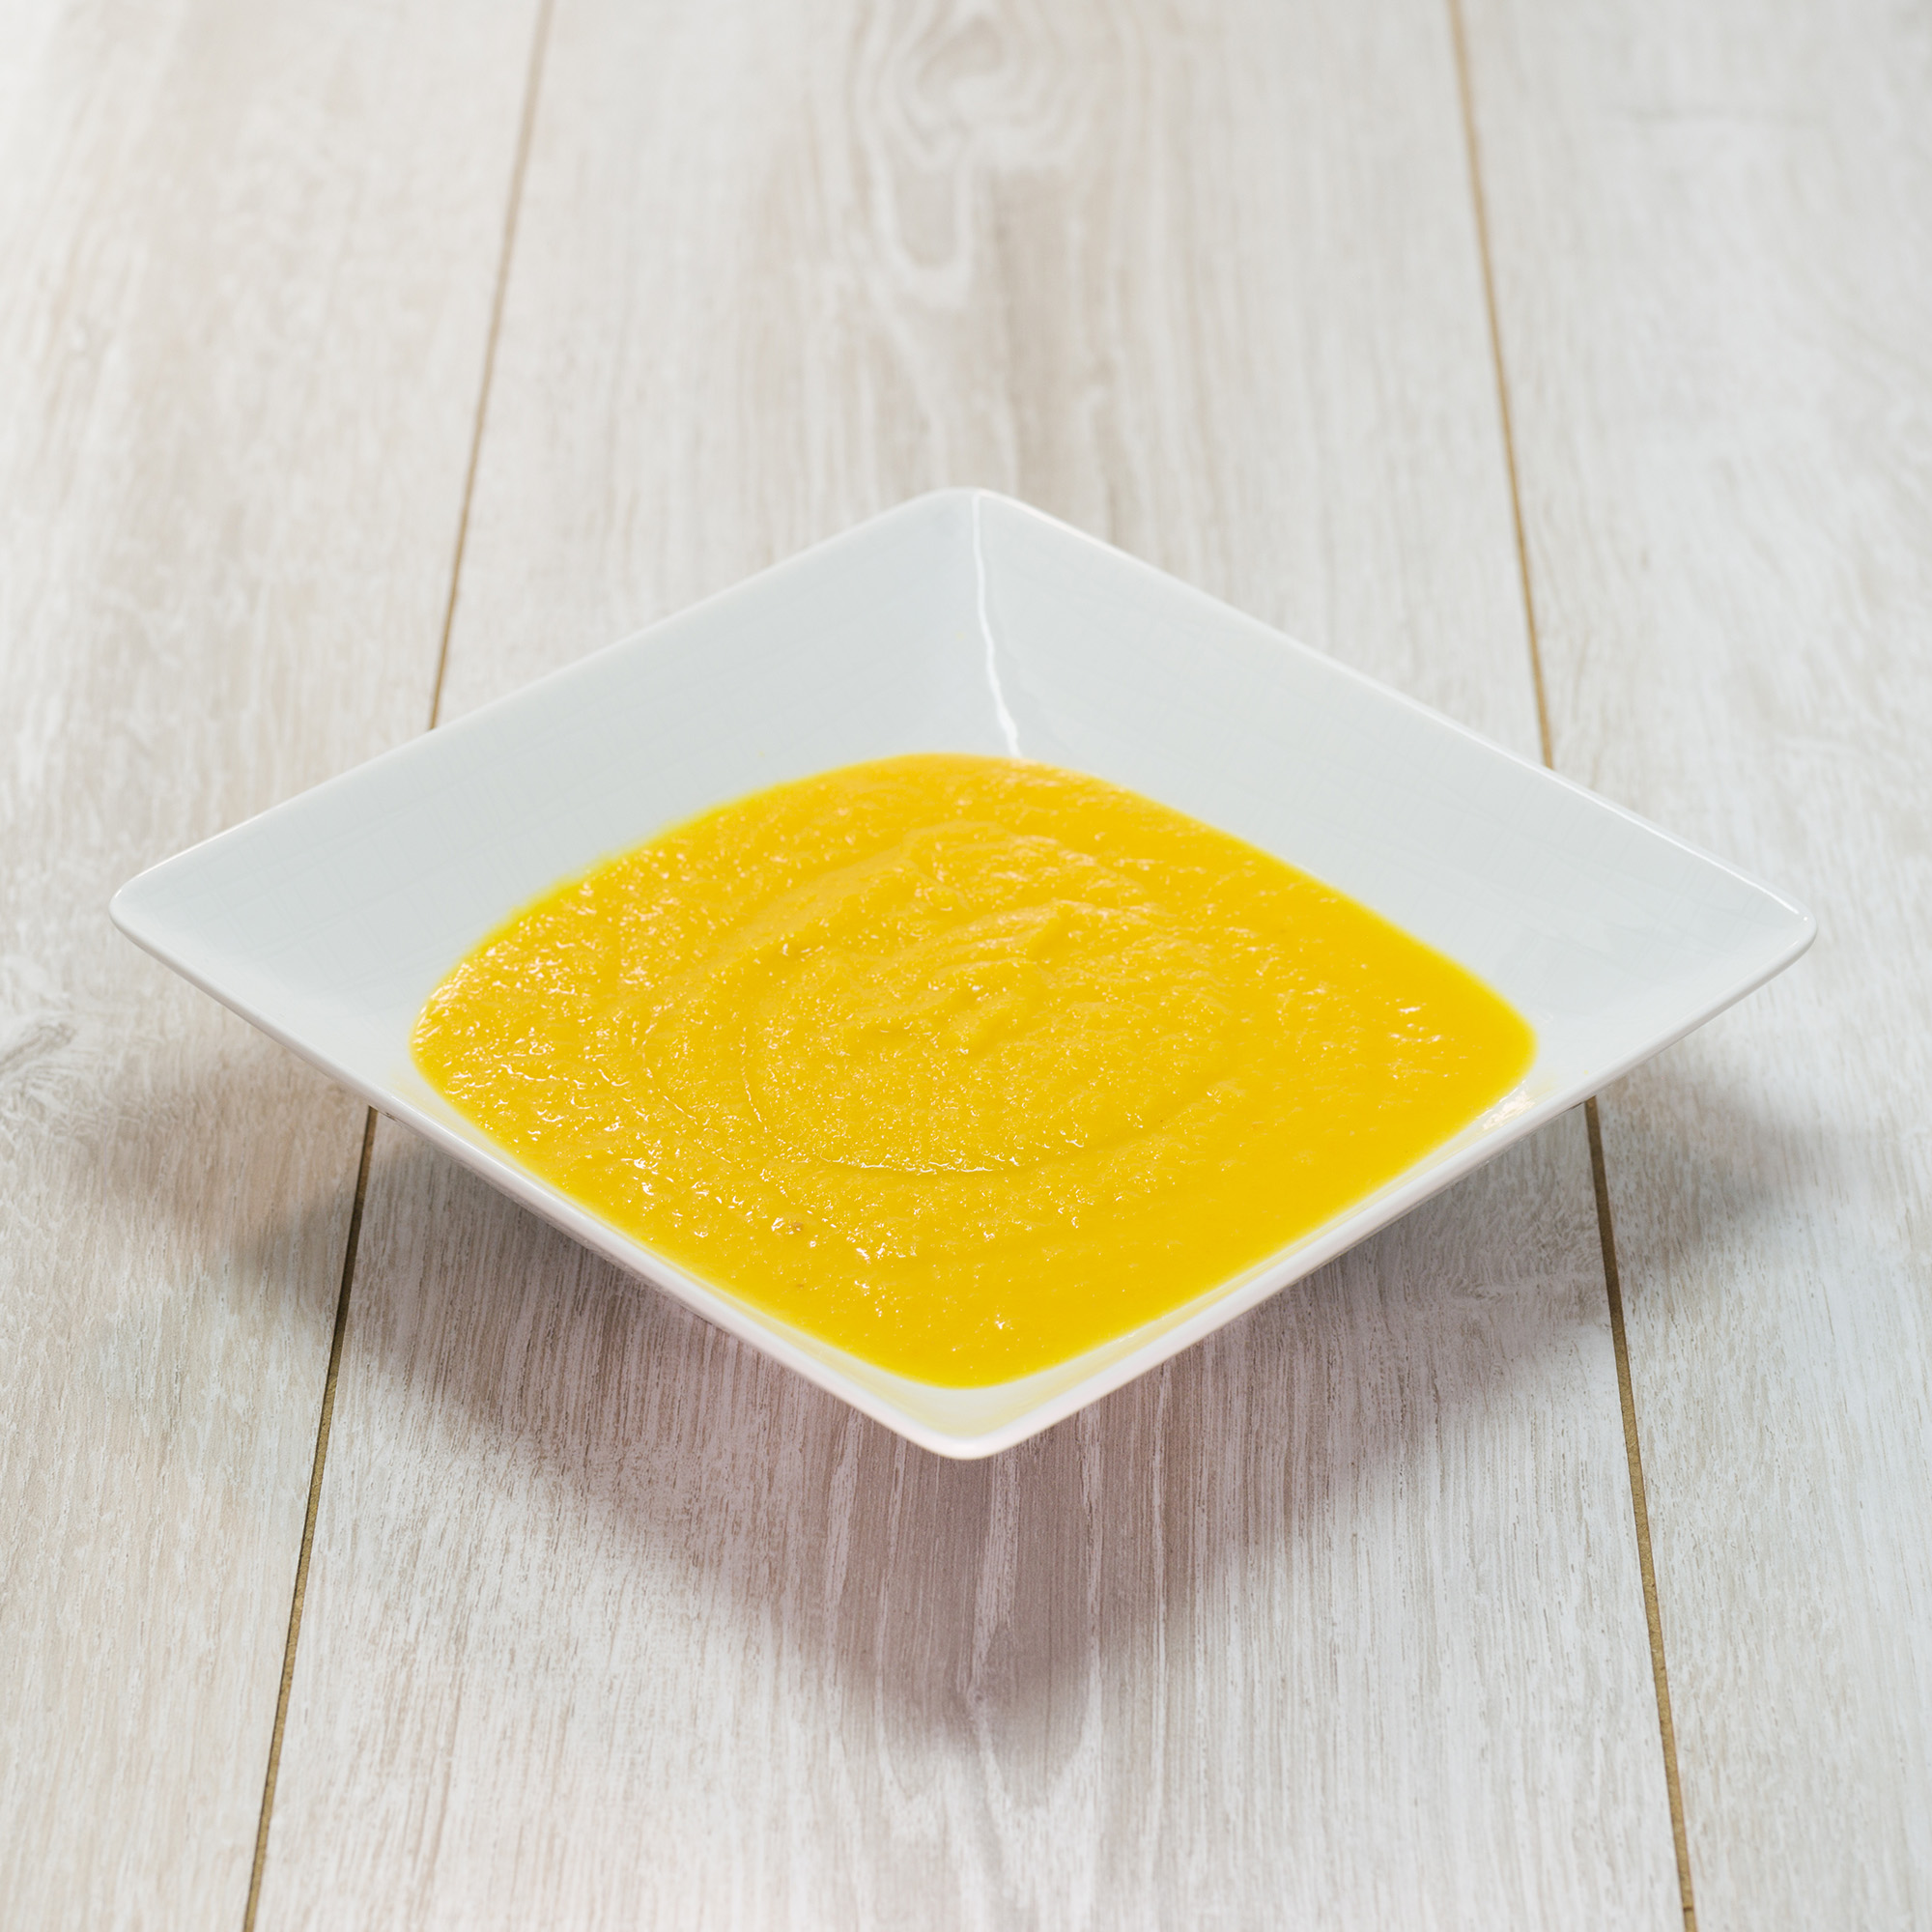 Grangusto Crema di Zucca gialla 280g – Collo da 6pz